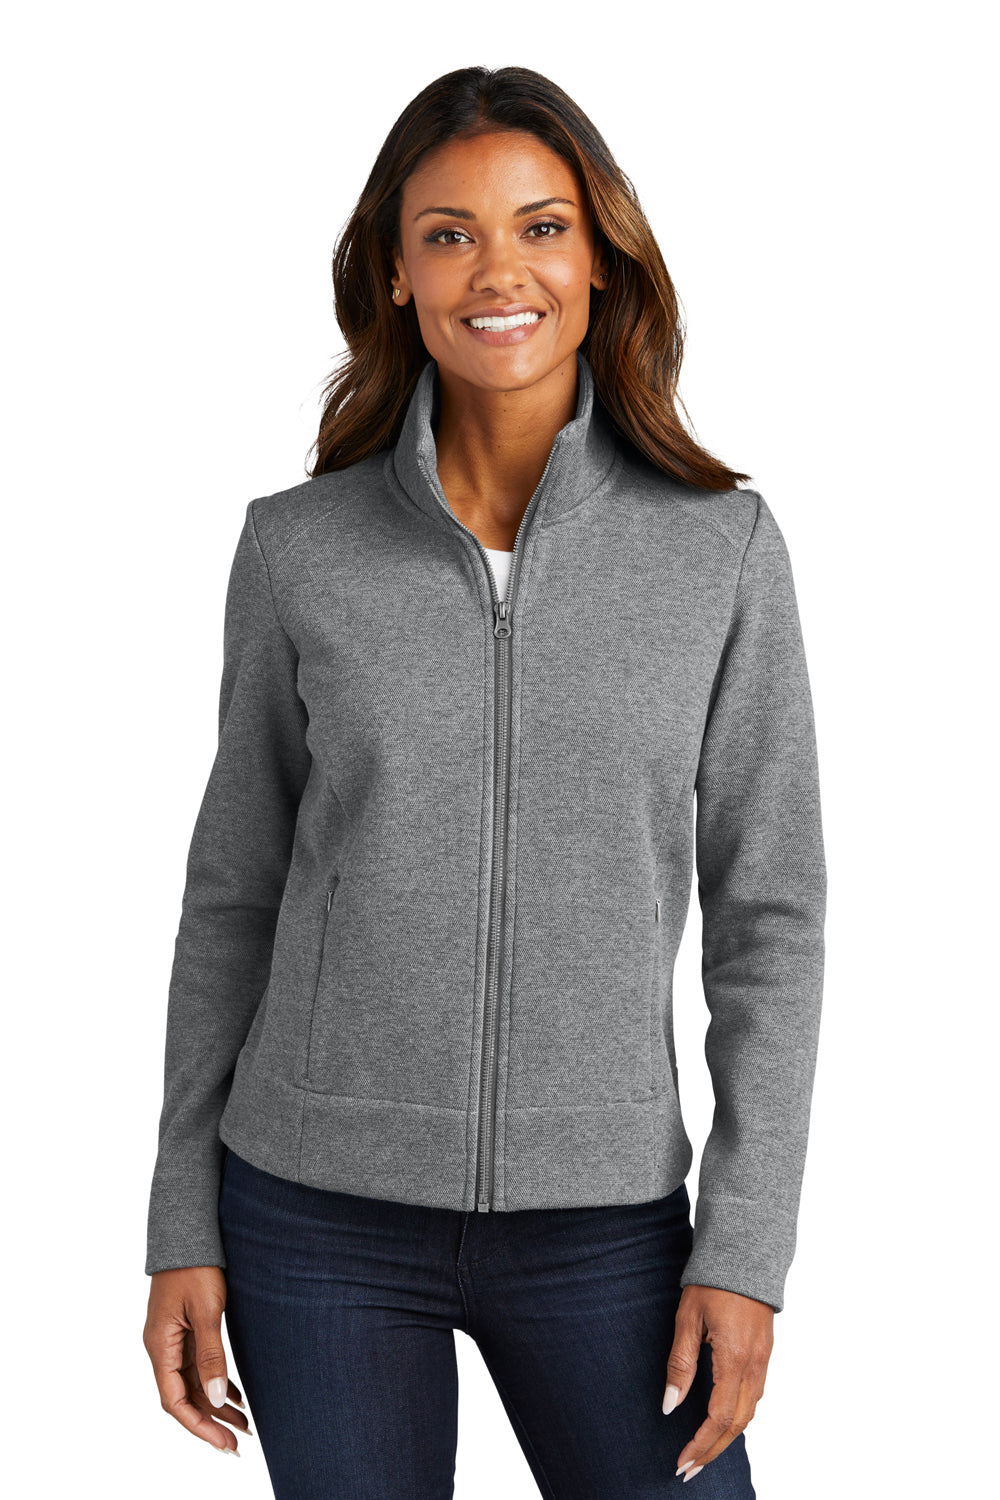 Port Authority L422 Womens Network Fleece Full Zip Jacket Heather Grey Front